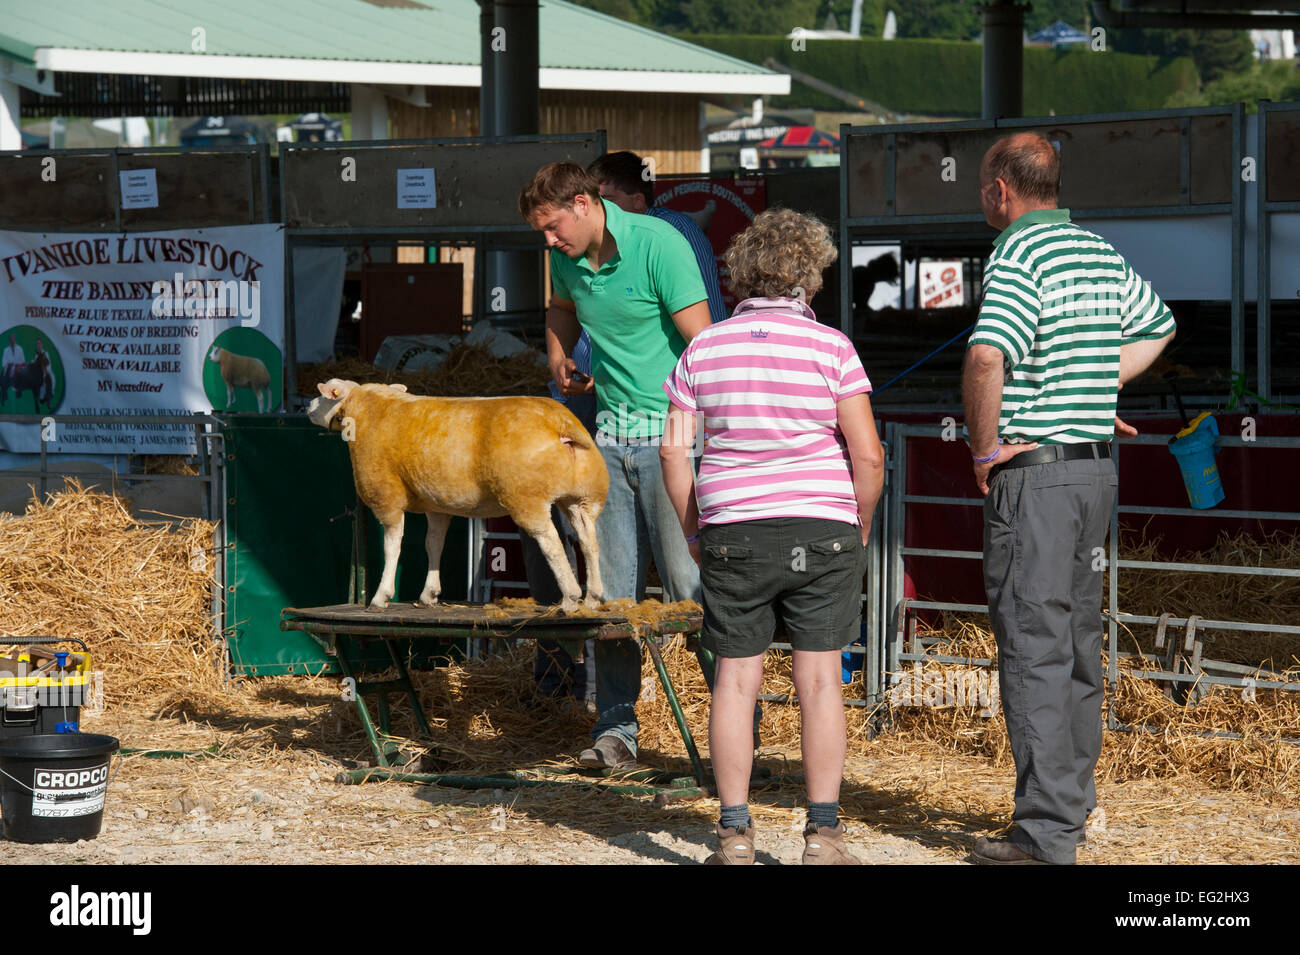 Les gens regardent en tant que concurrent dans la classe, les moutons loegel jet est brossé par agriculteur propriétaire, avant qu'elle passe la concurrence - Great Yorkshire Show, England, UK. Banque D'Images